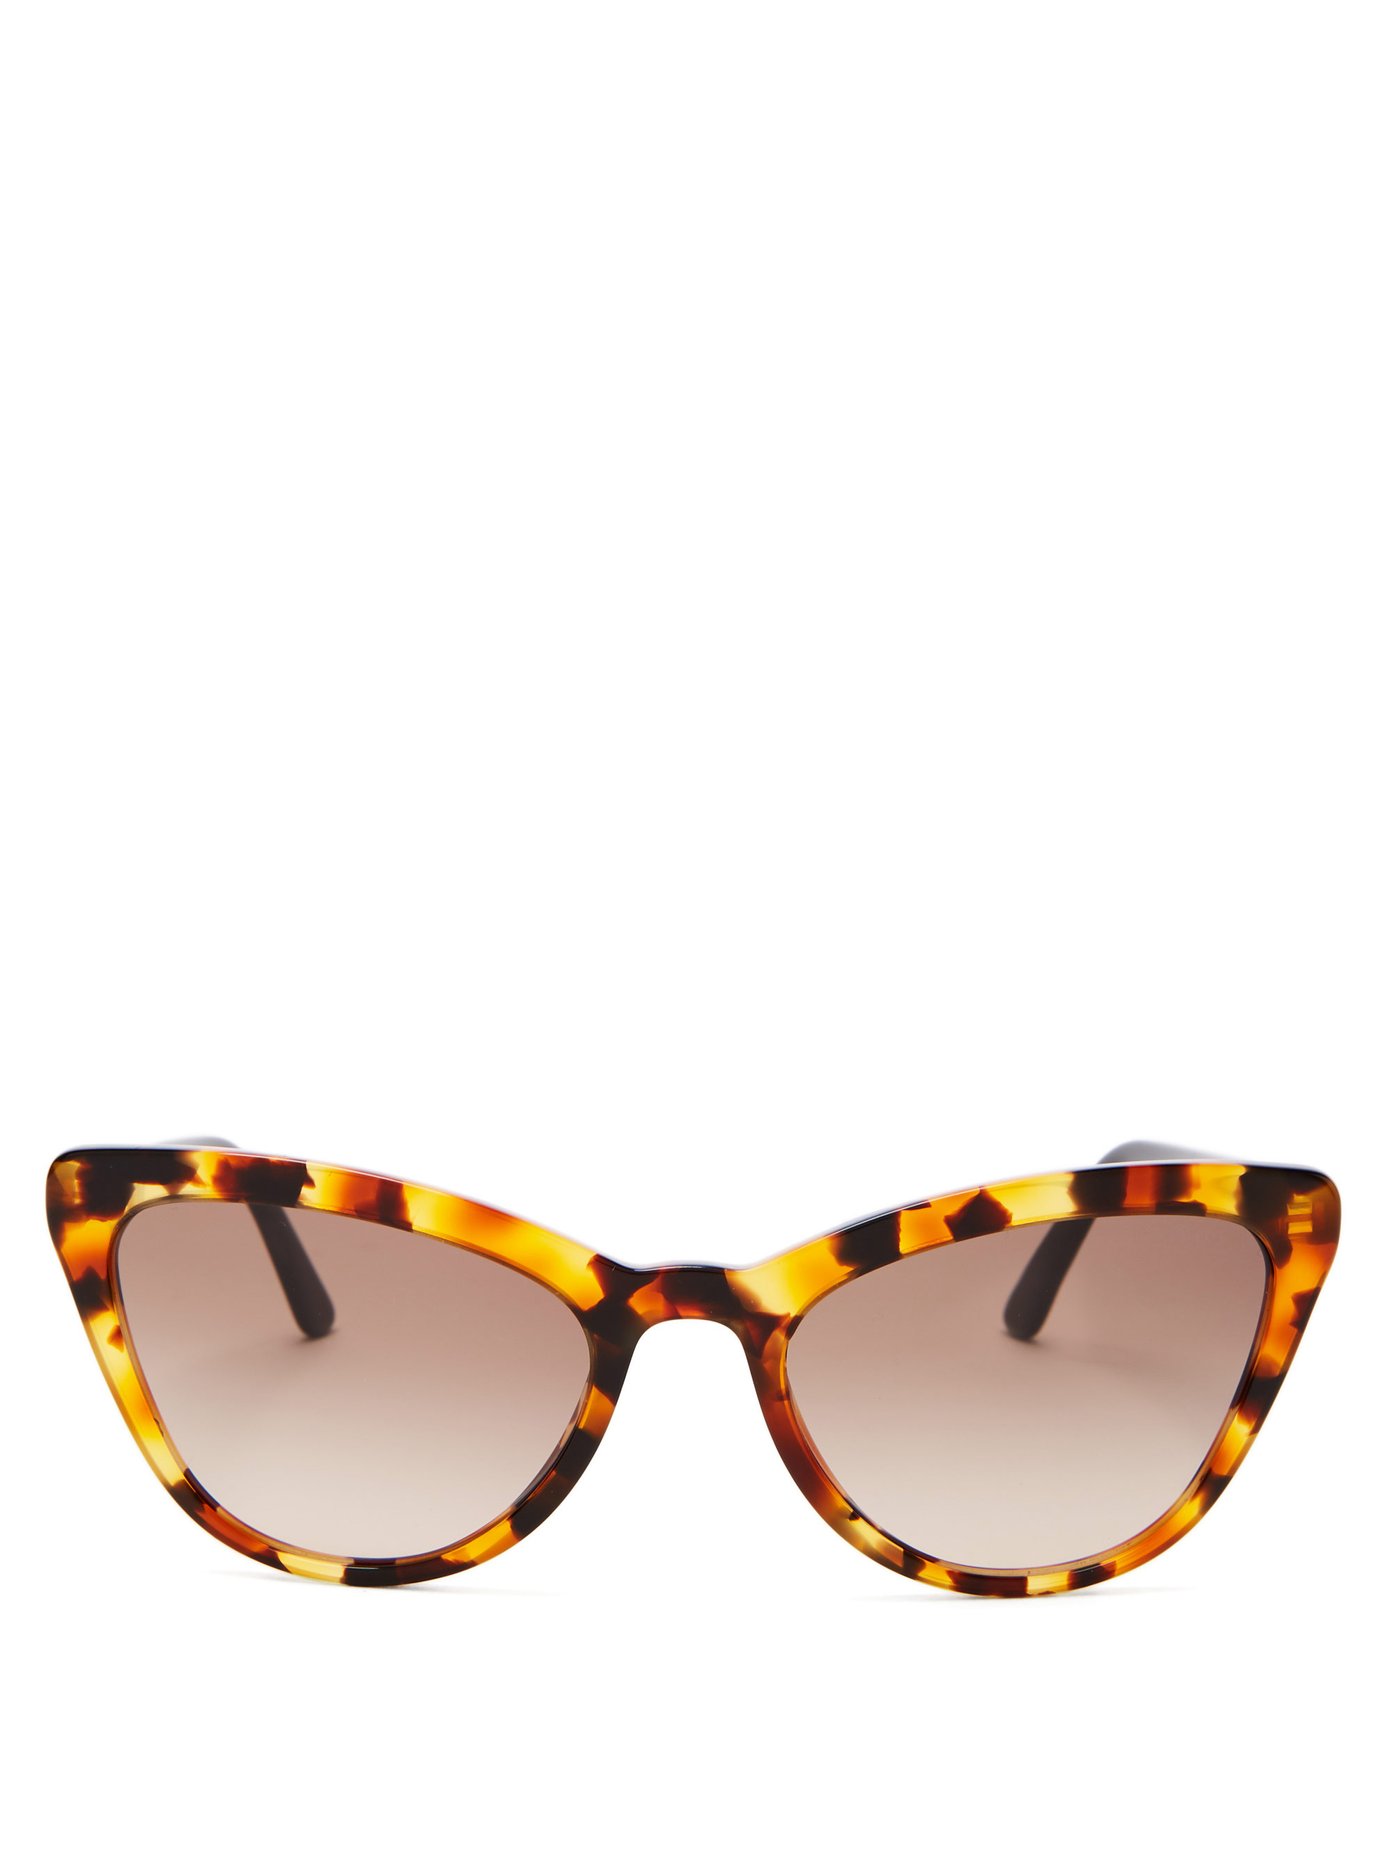 prada cat eye tortoiseshell sunglasses